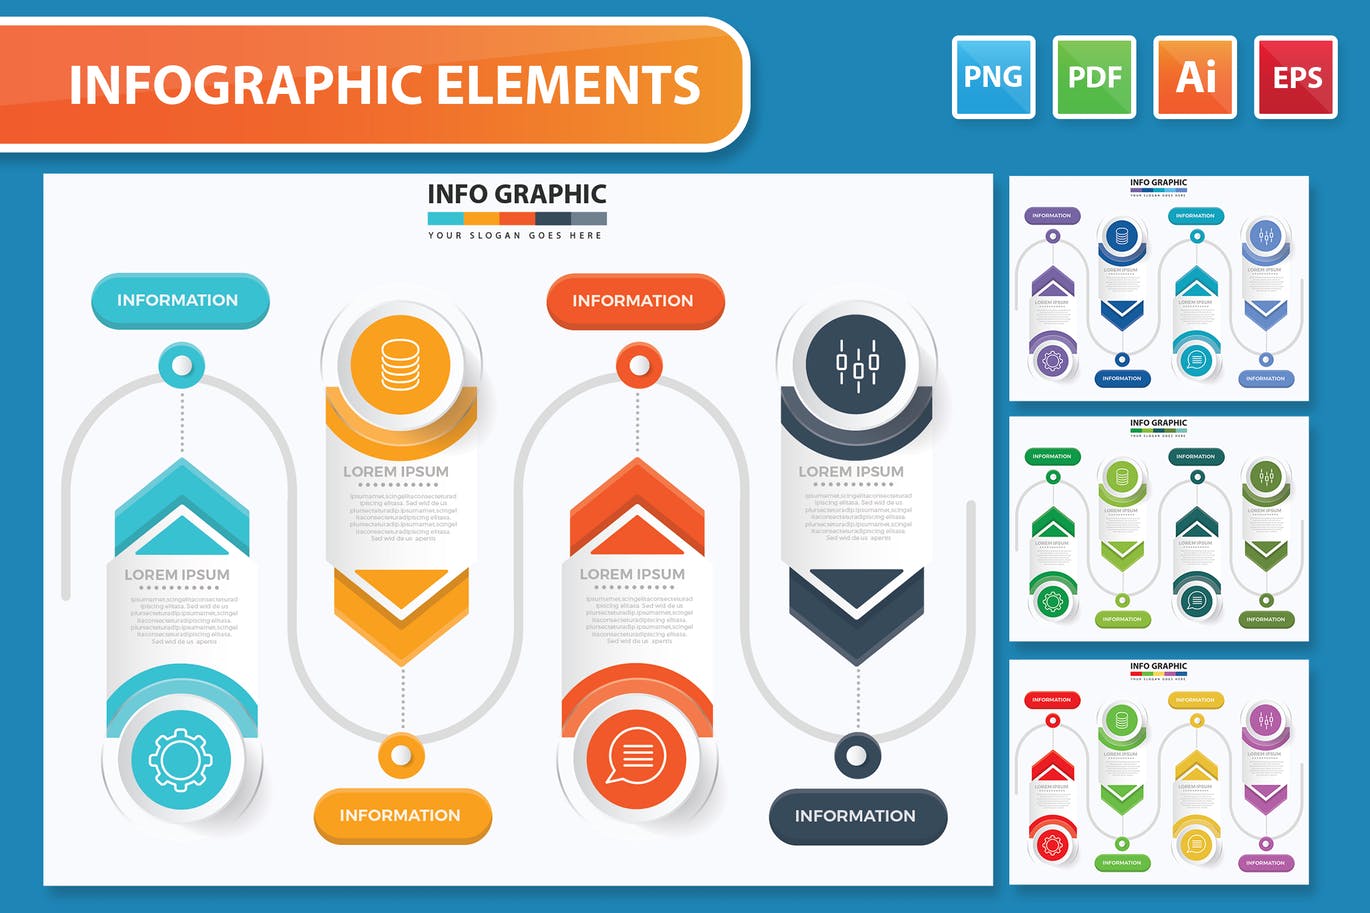 数据解释信息图表元素设计素材 Infographic Design 幻灯图表 第1张